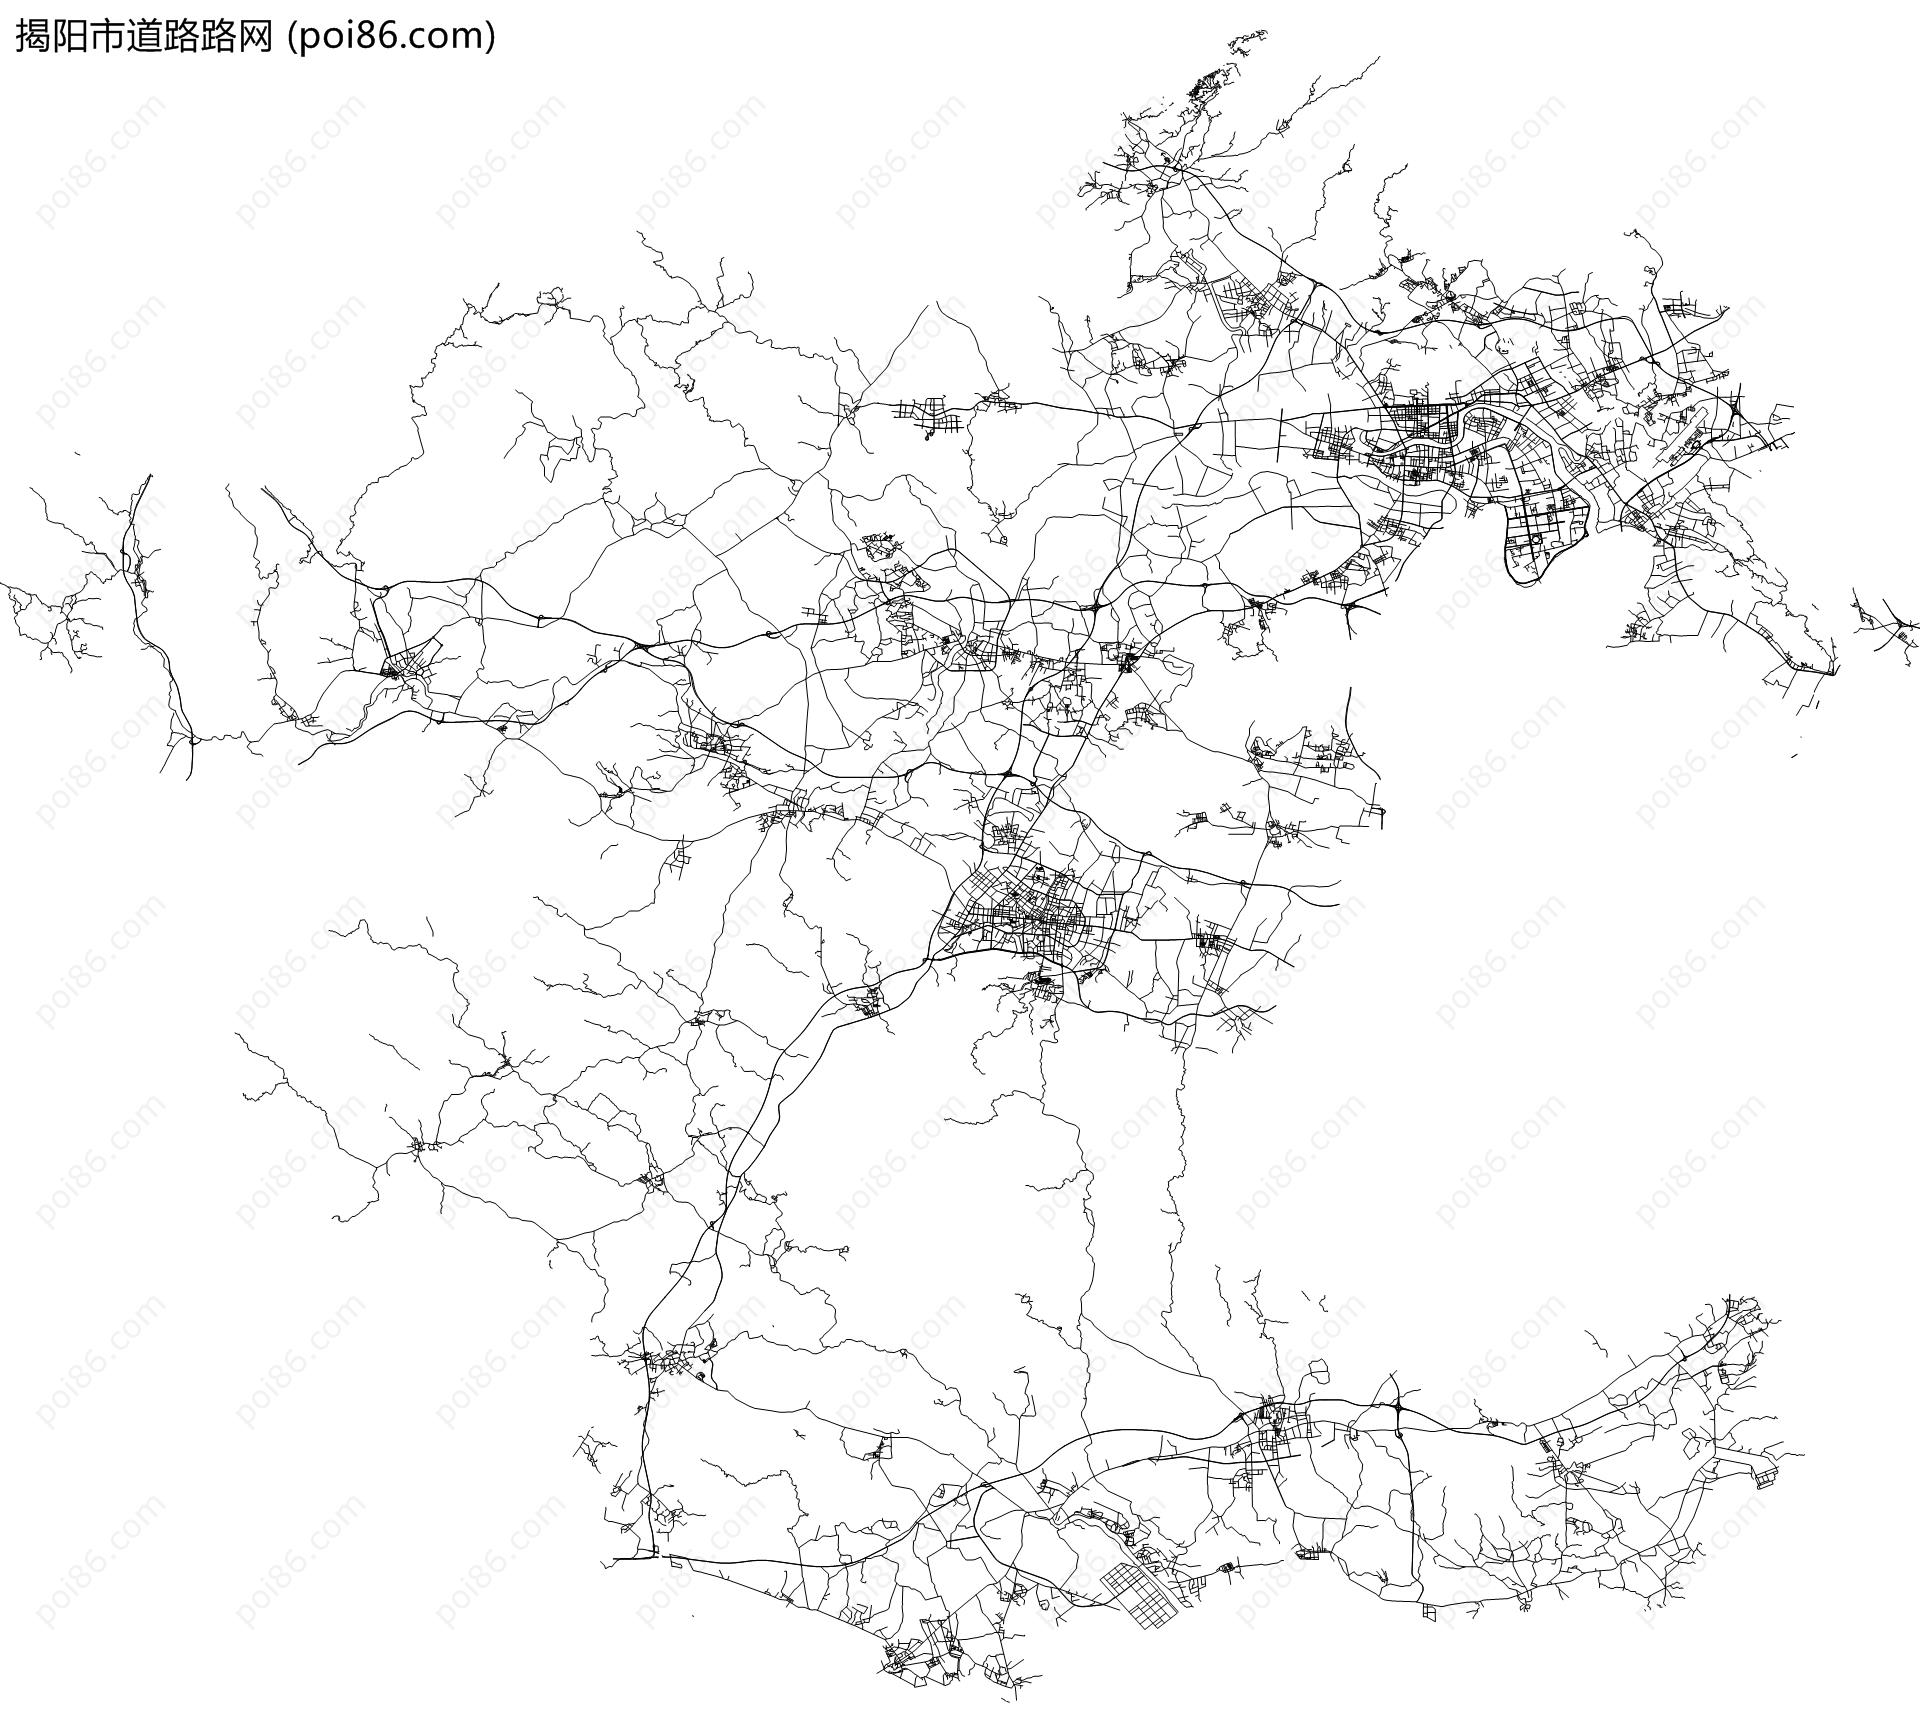 揭阳市道路路网地图